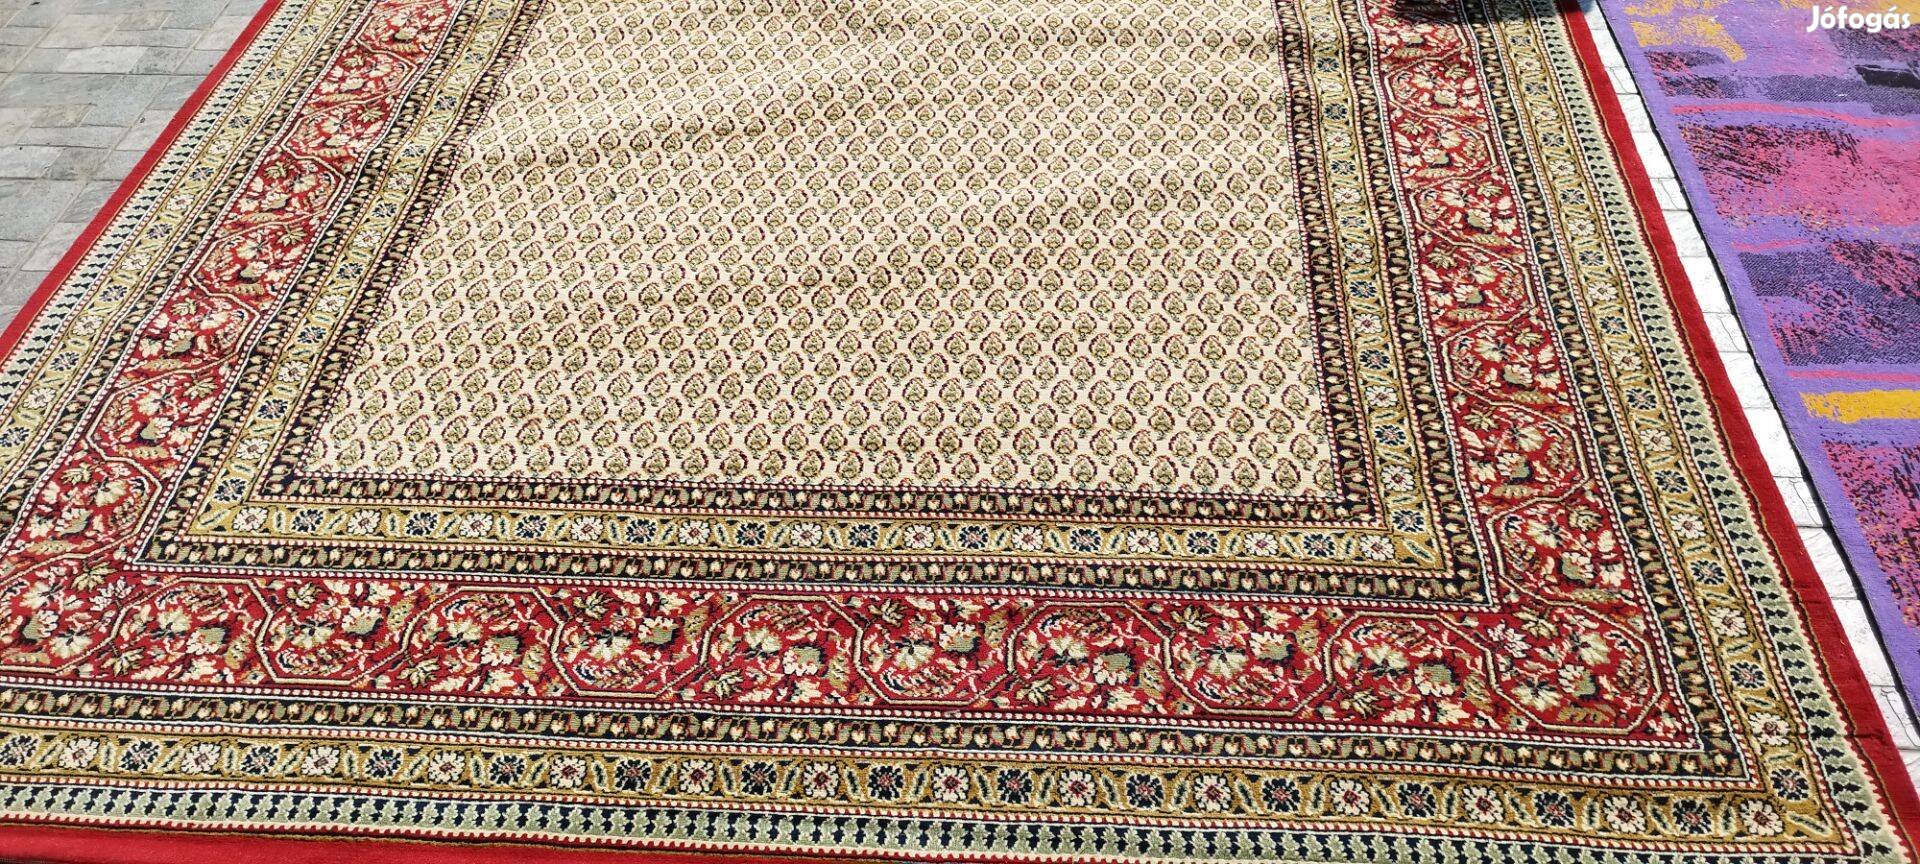 Nagyméretű perzsa szőnyeg a tradicionális divat szerinti eladó